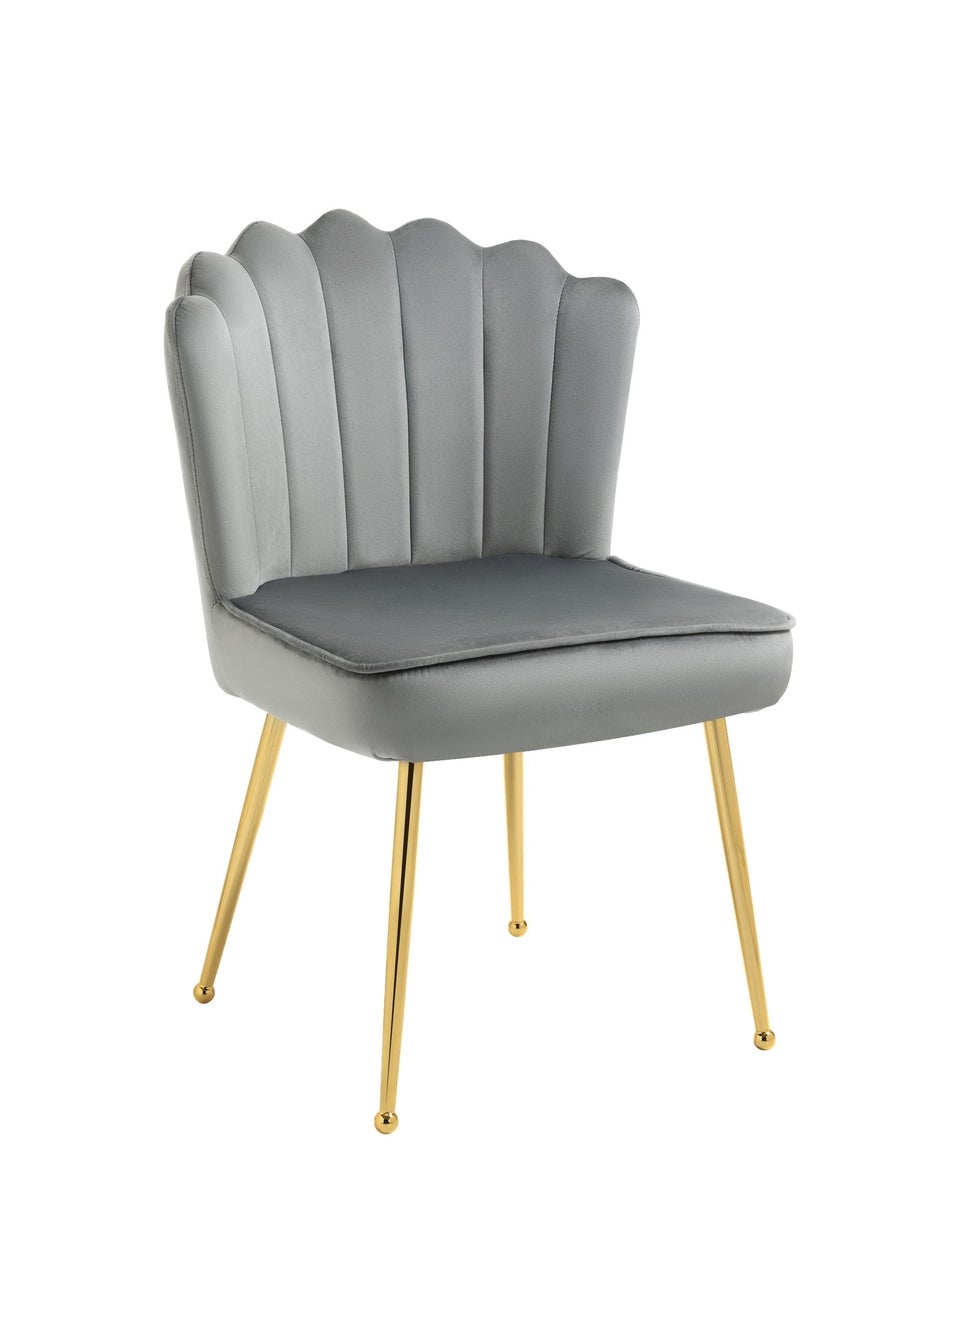 HOMCOM Grey Velvet-Feel Accent Chair (57cm x 58cm x 88cm)